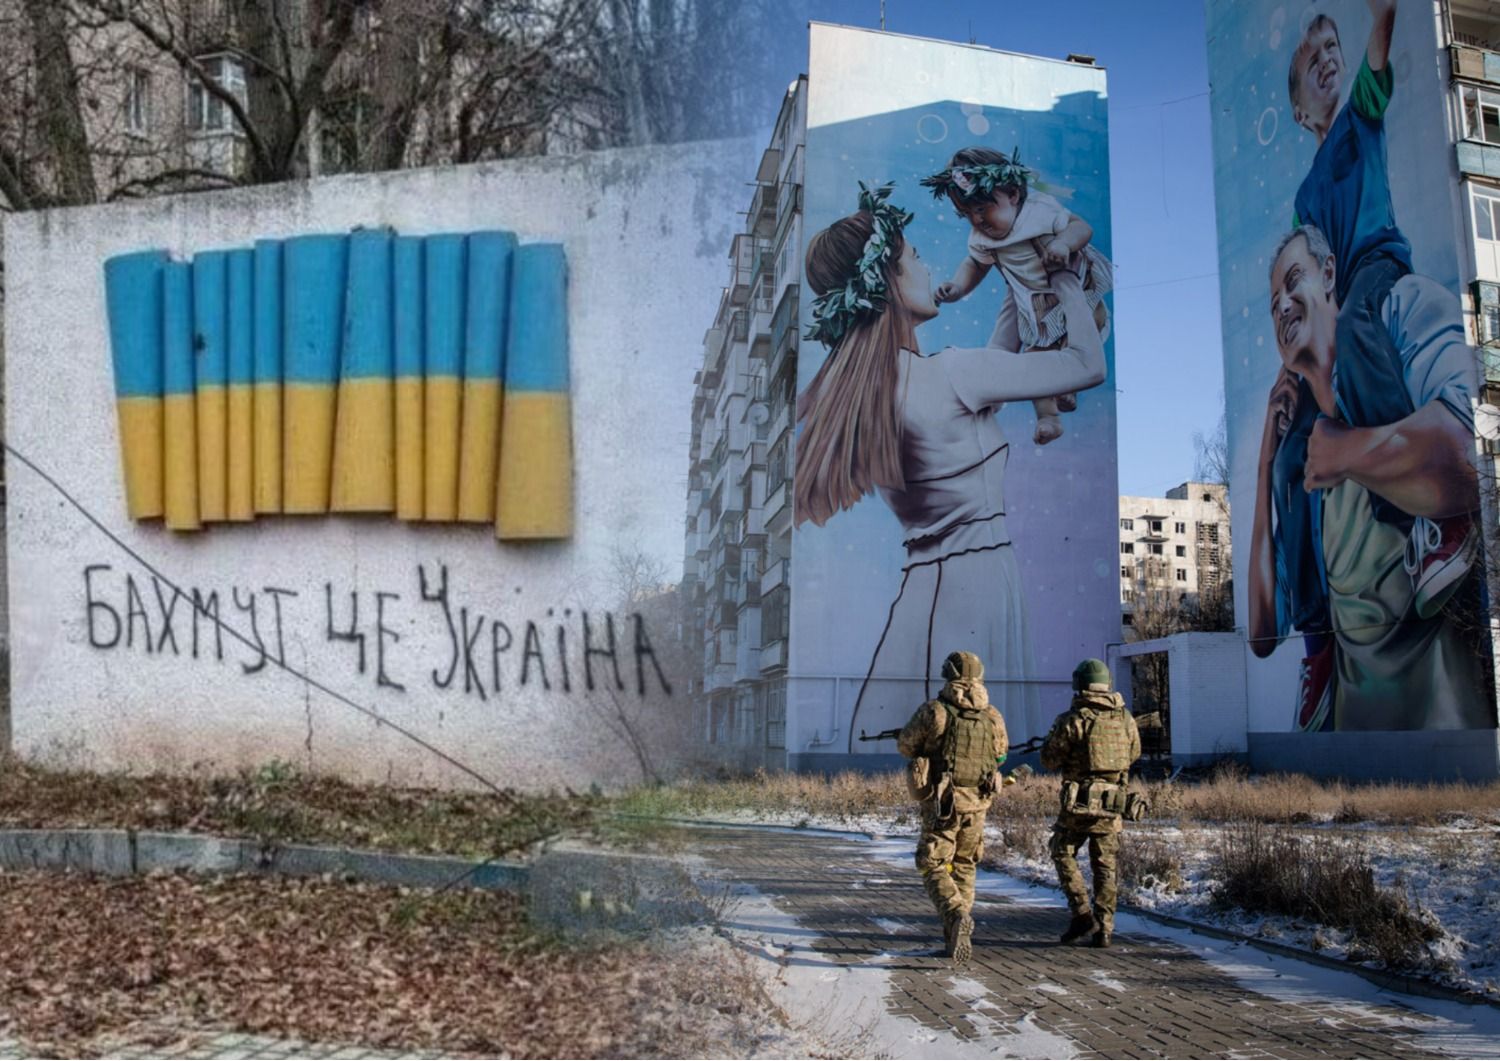 Бахмут - как правильно называть украинскую крепость духа - 24 Канал - Образование